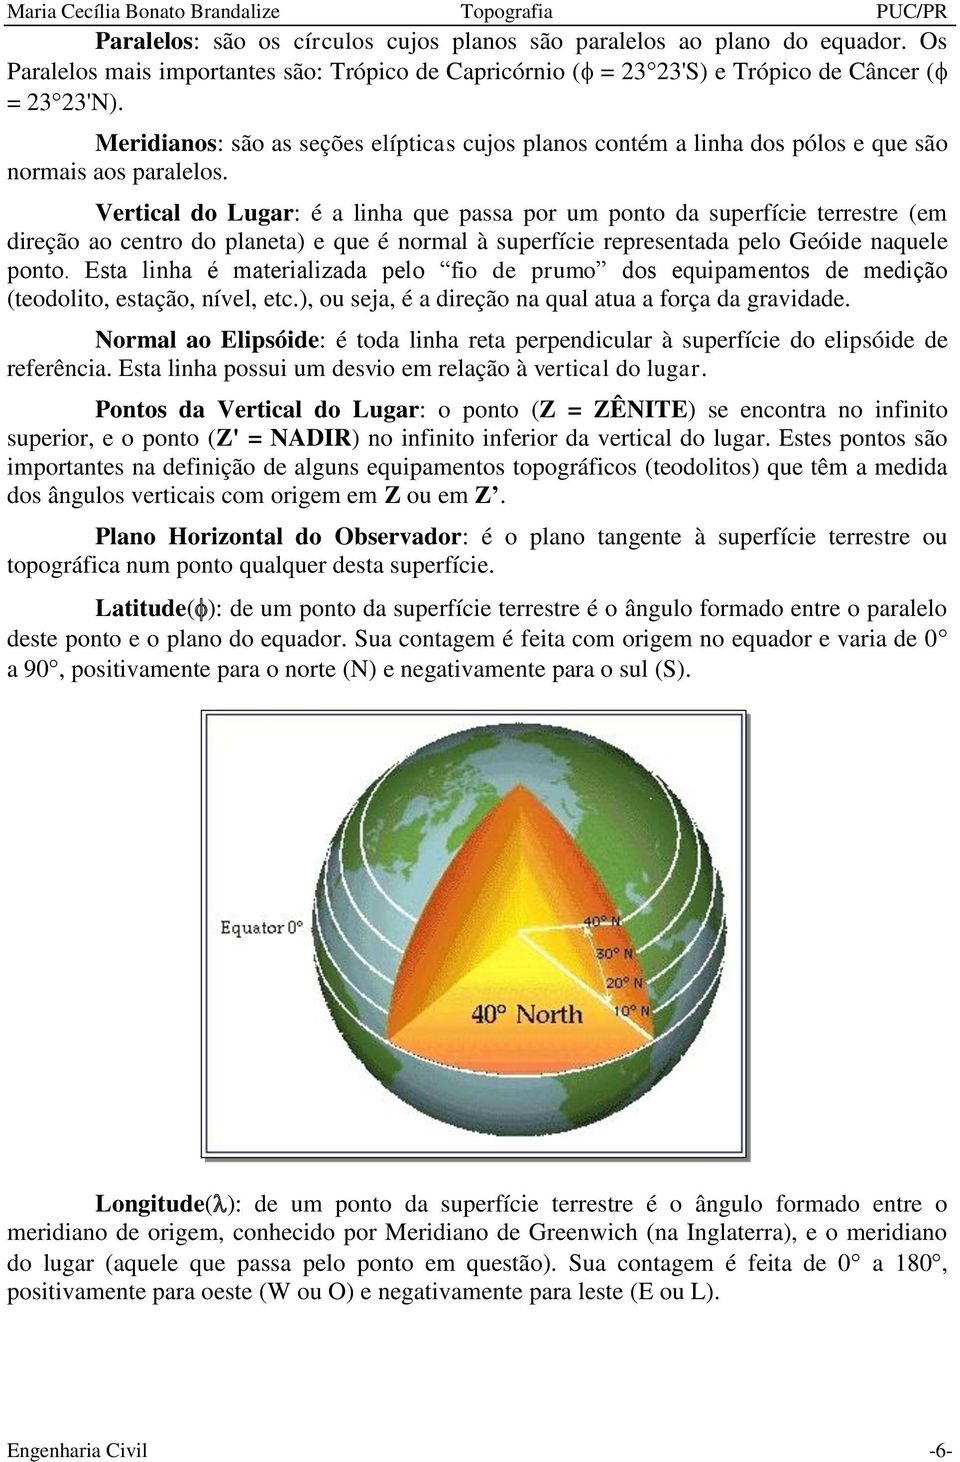 Vertical do Lugar: é a linha que passa por um ponto da superfície terrestre (em direção ao centro do planeta) e que é normal à superfície representada pelo Geóide naquele ponto.